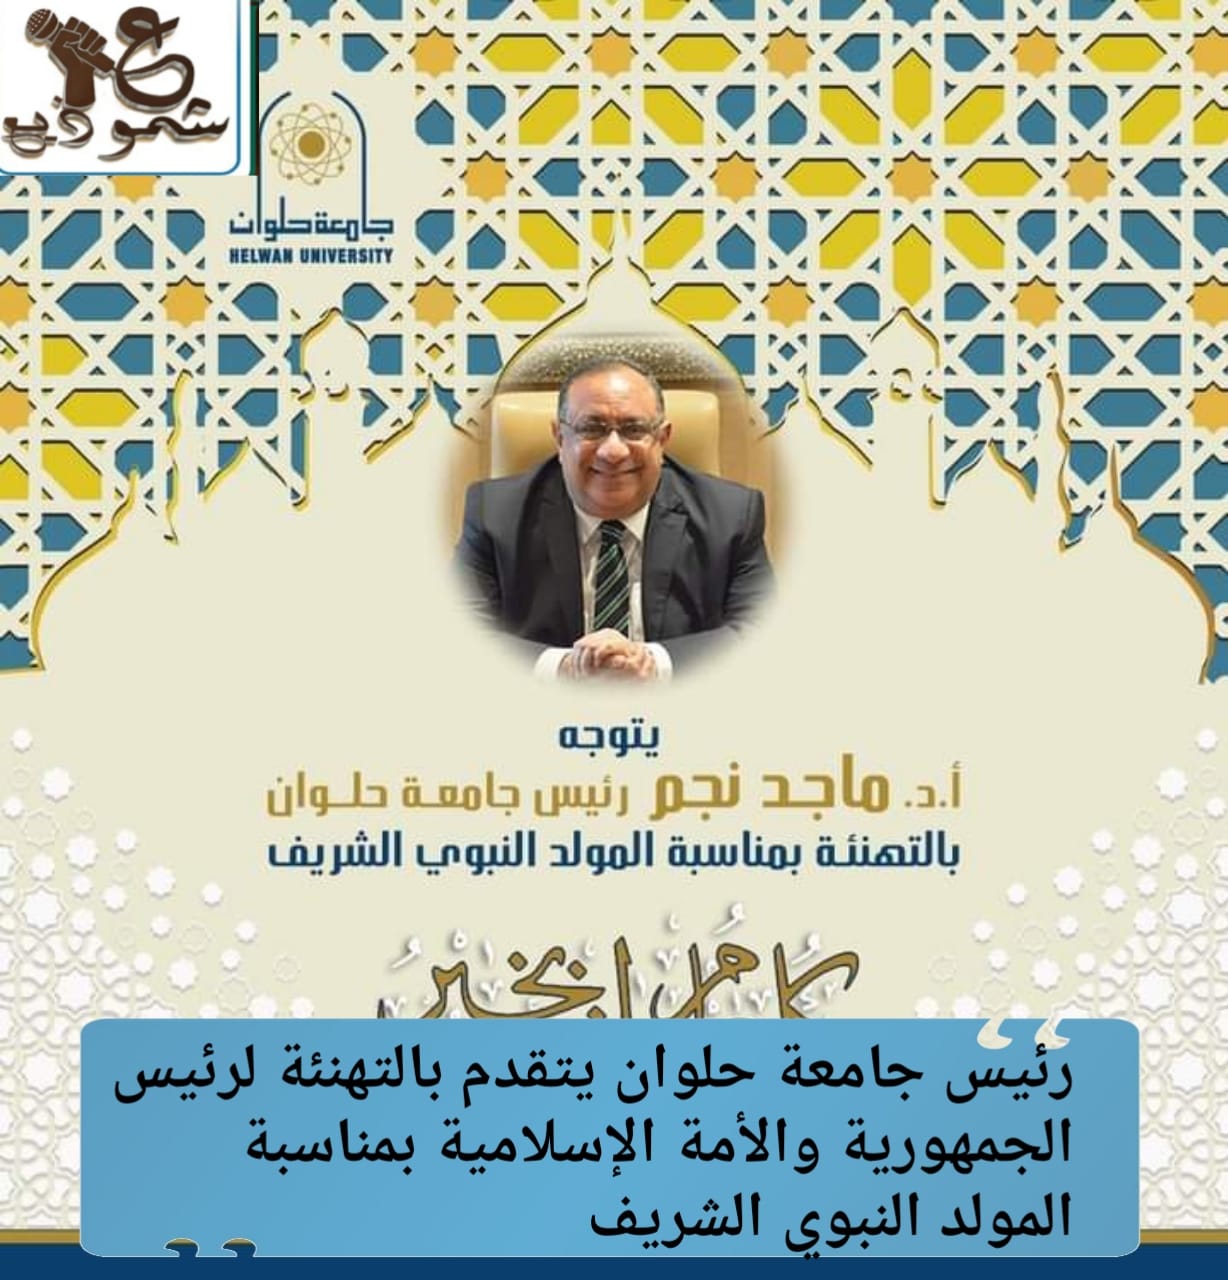 رئيس جامعة حلوان يتقدم بالتهنئة لرئيس الجمهورية والأمة الإسلامية بمناسبة المولد النبوي الشريف